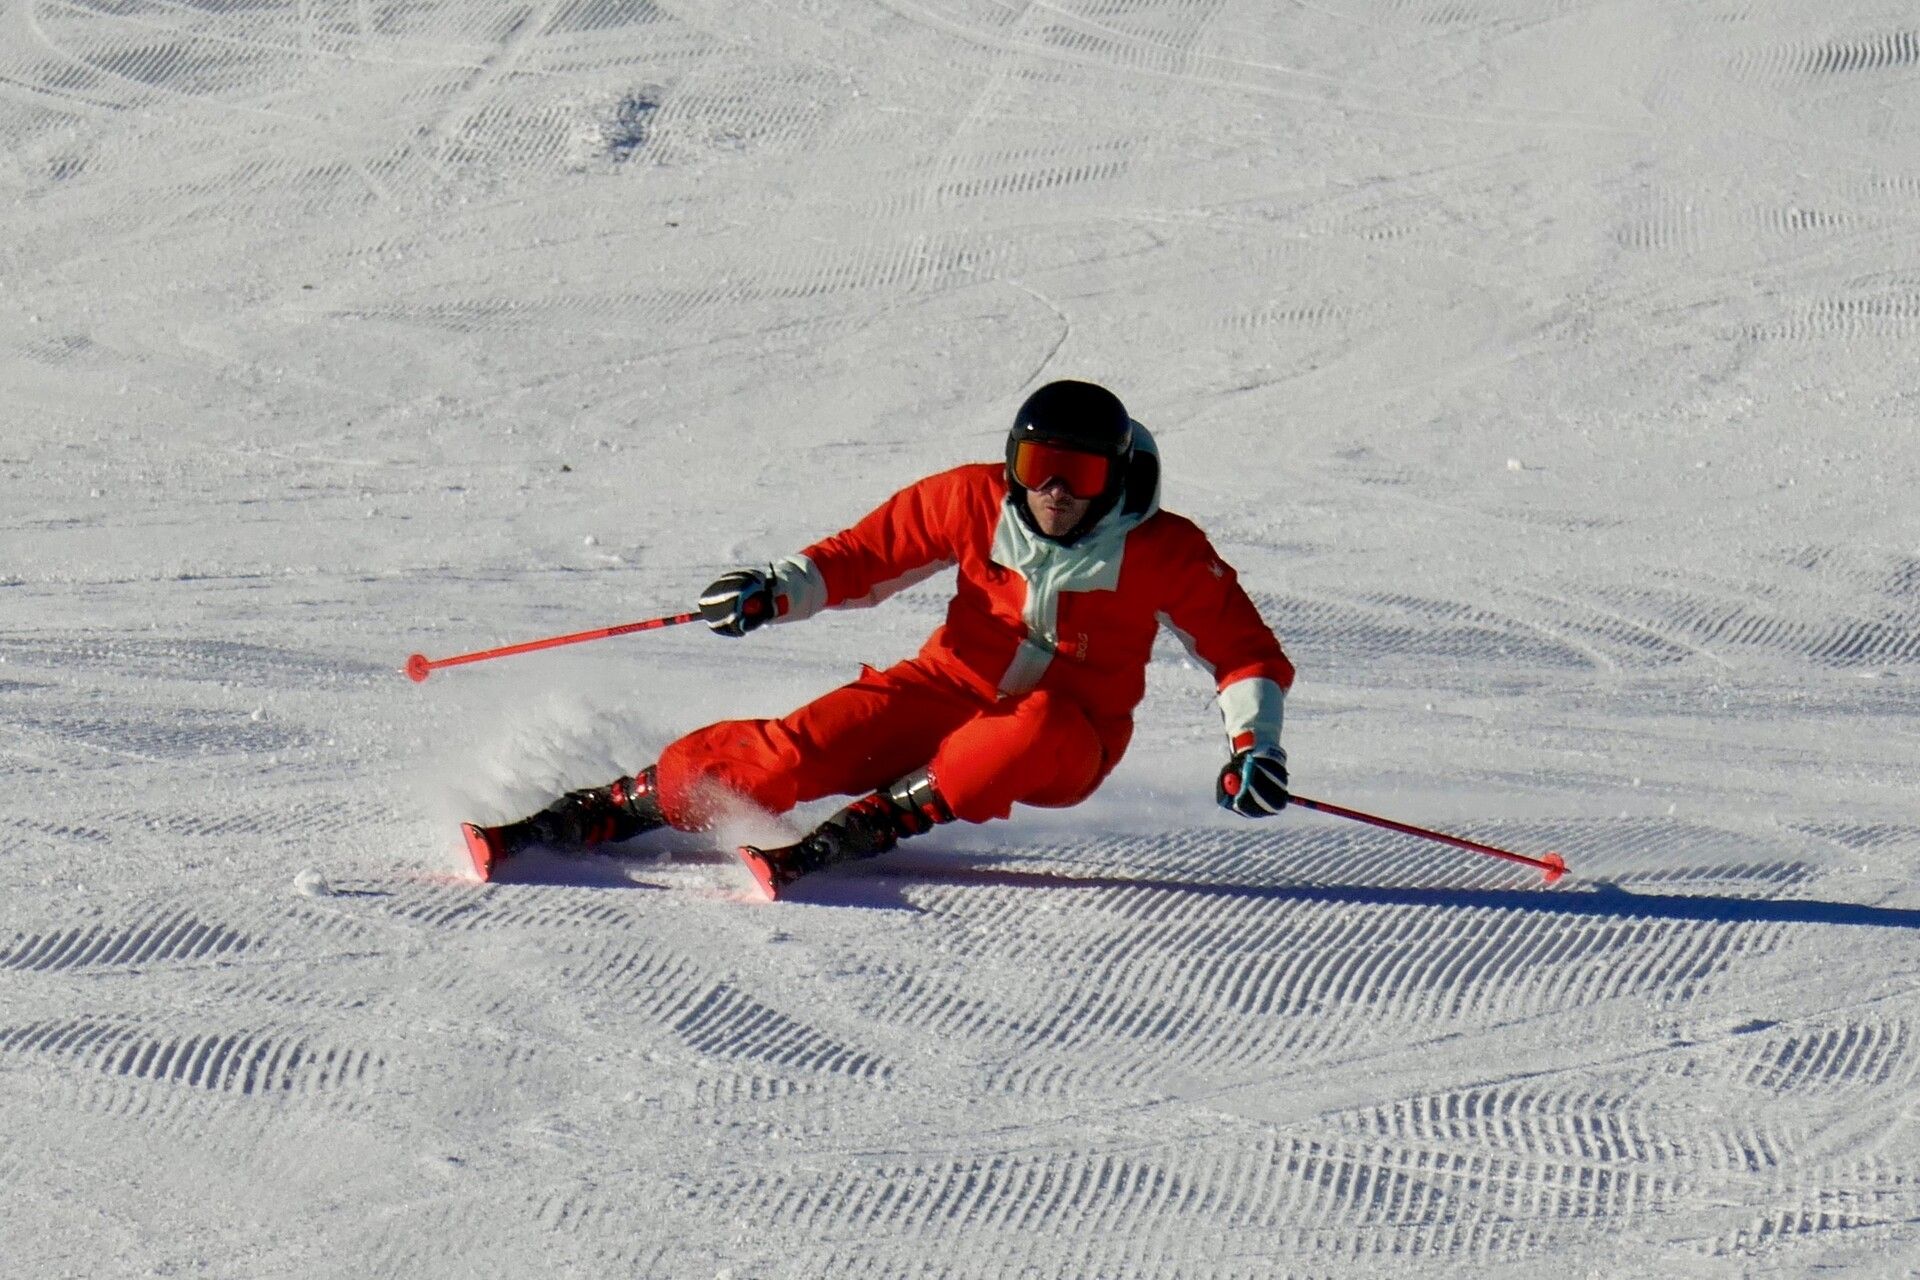 Foto esquiando, navidades 23-24